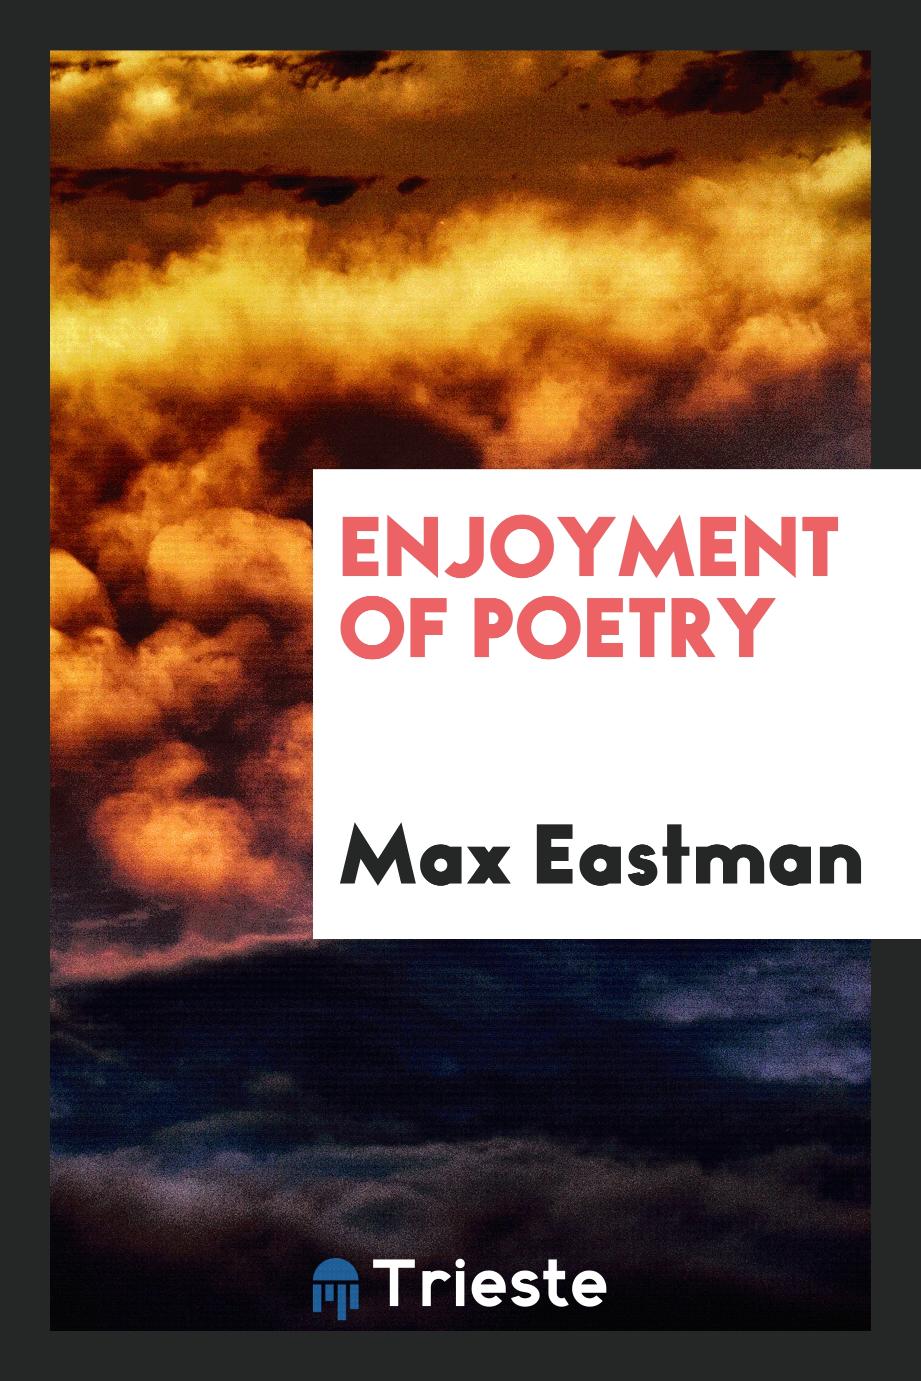 Max Eastman - Enjoyment of Poetry